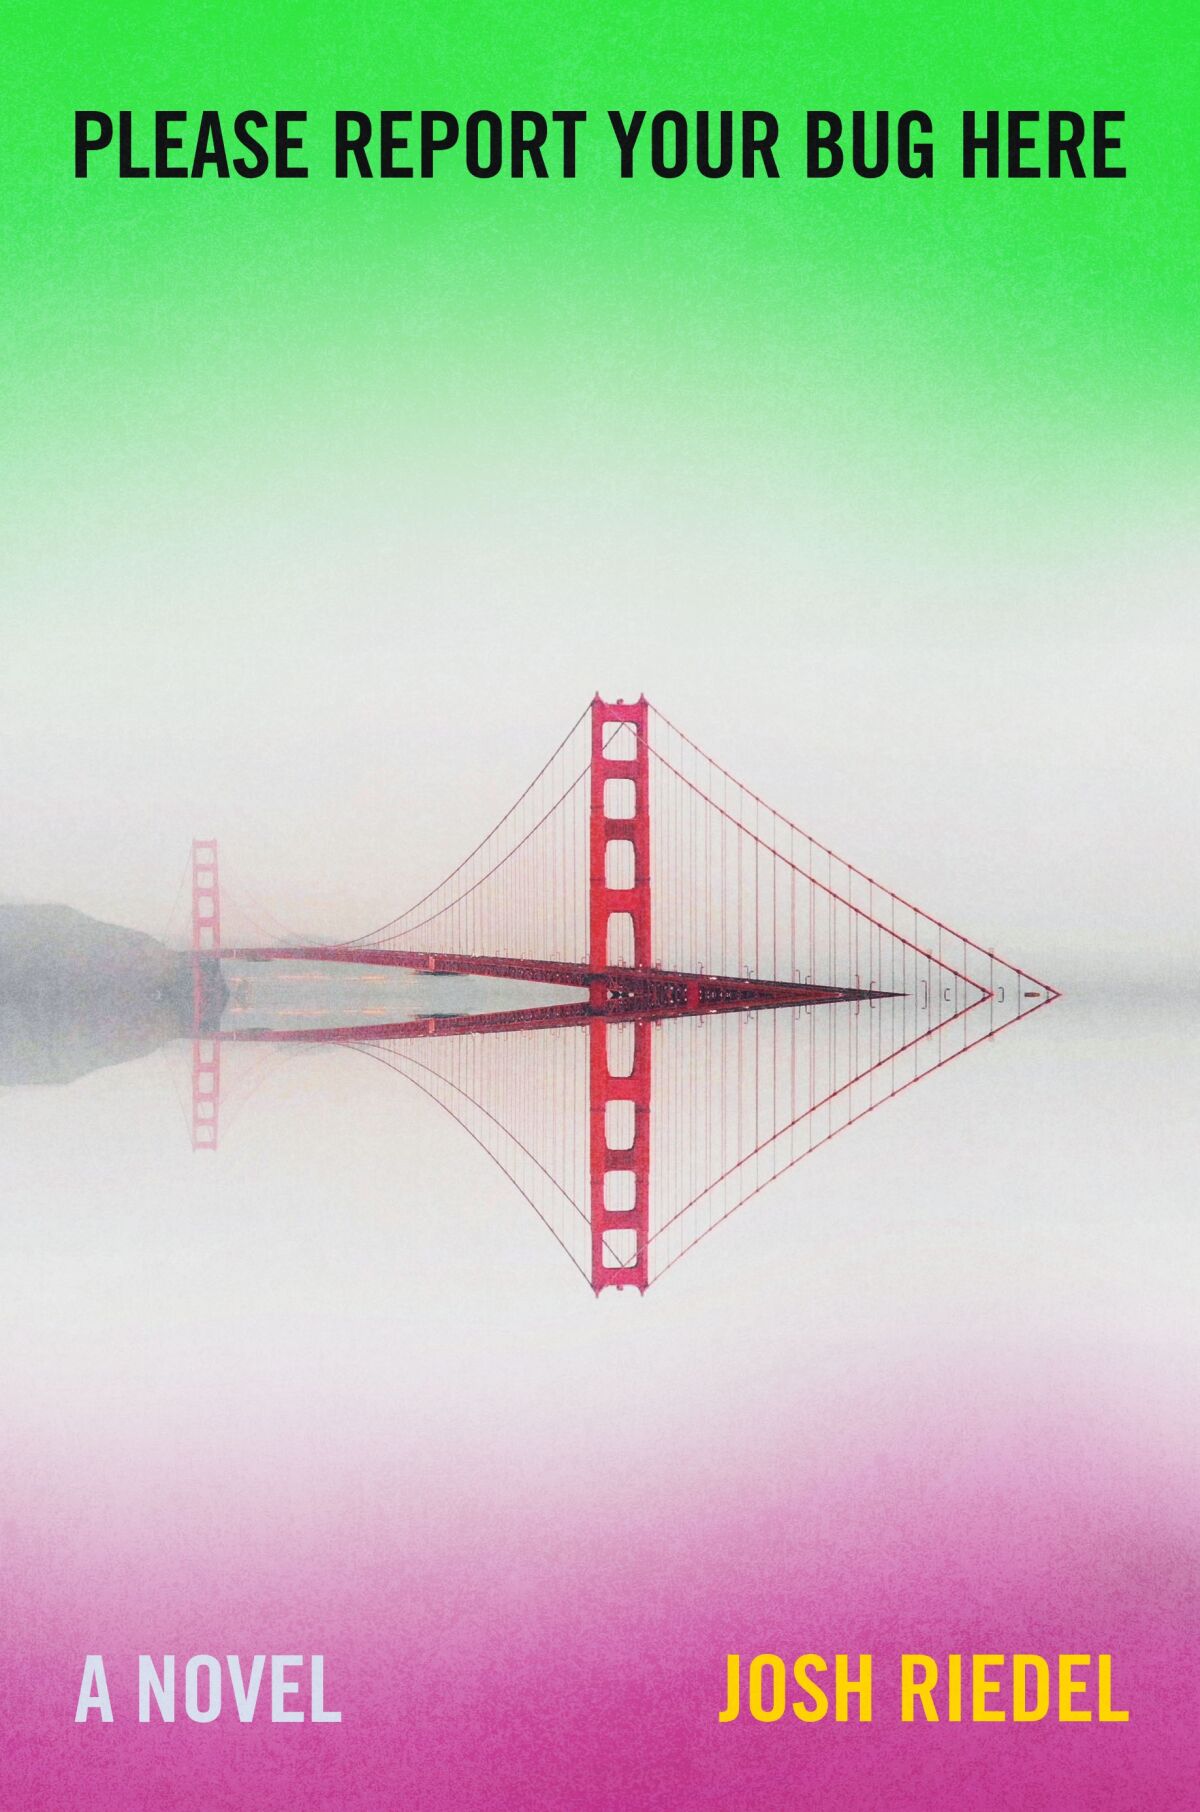 Couverture de livre verte, blanche et rose avec le Golden Gate Bridge. 